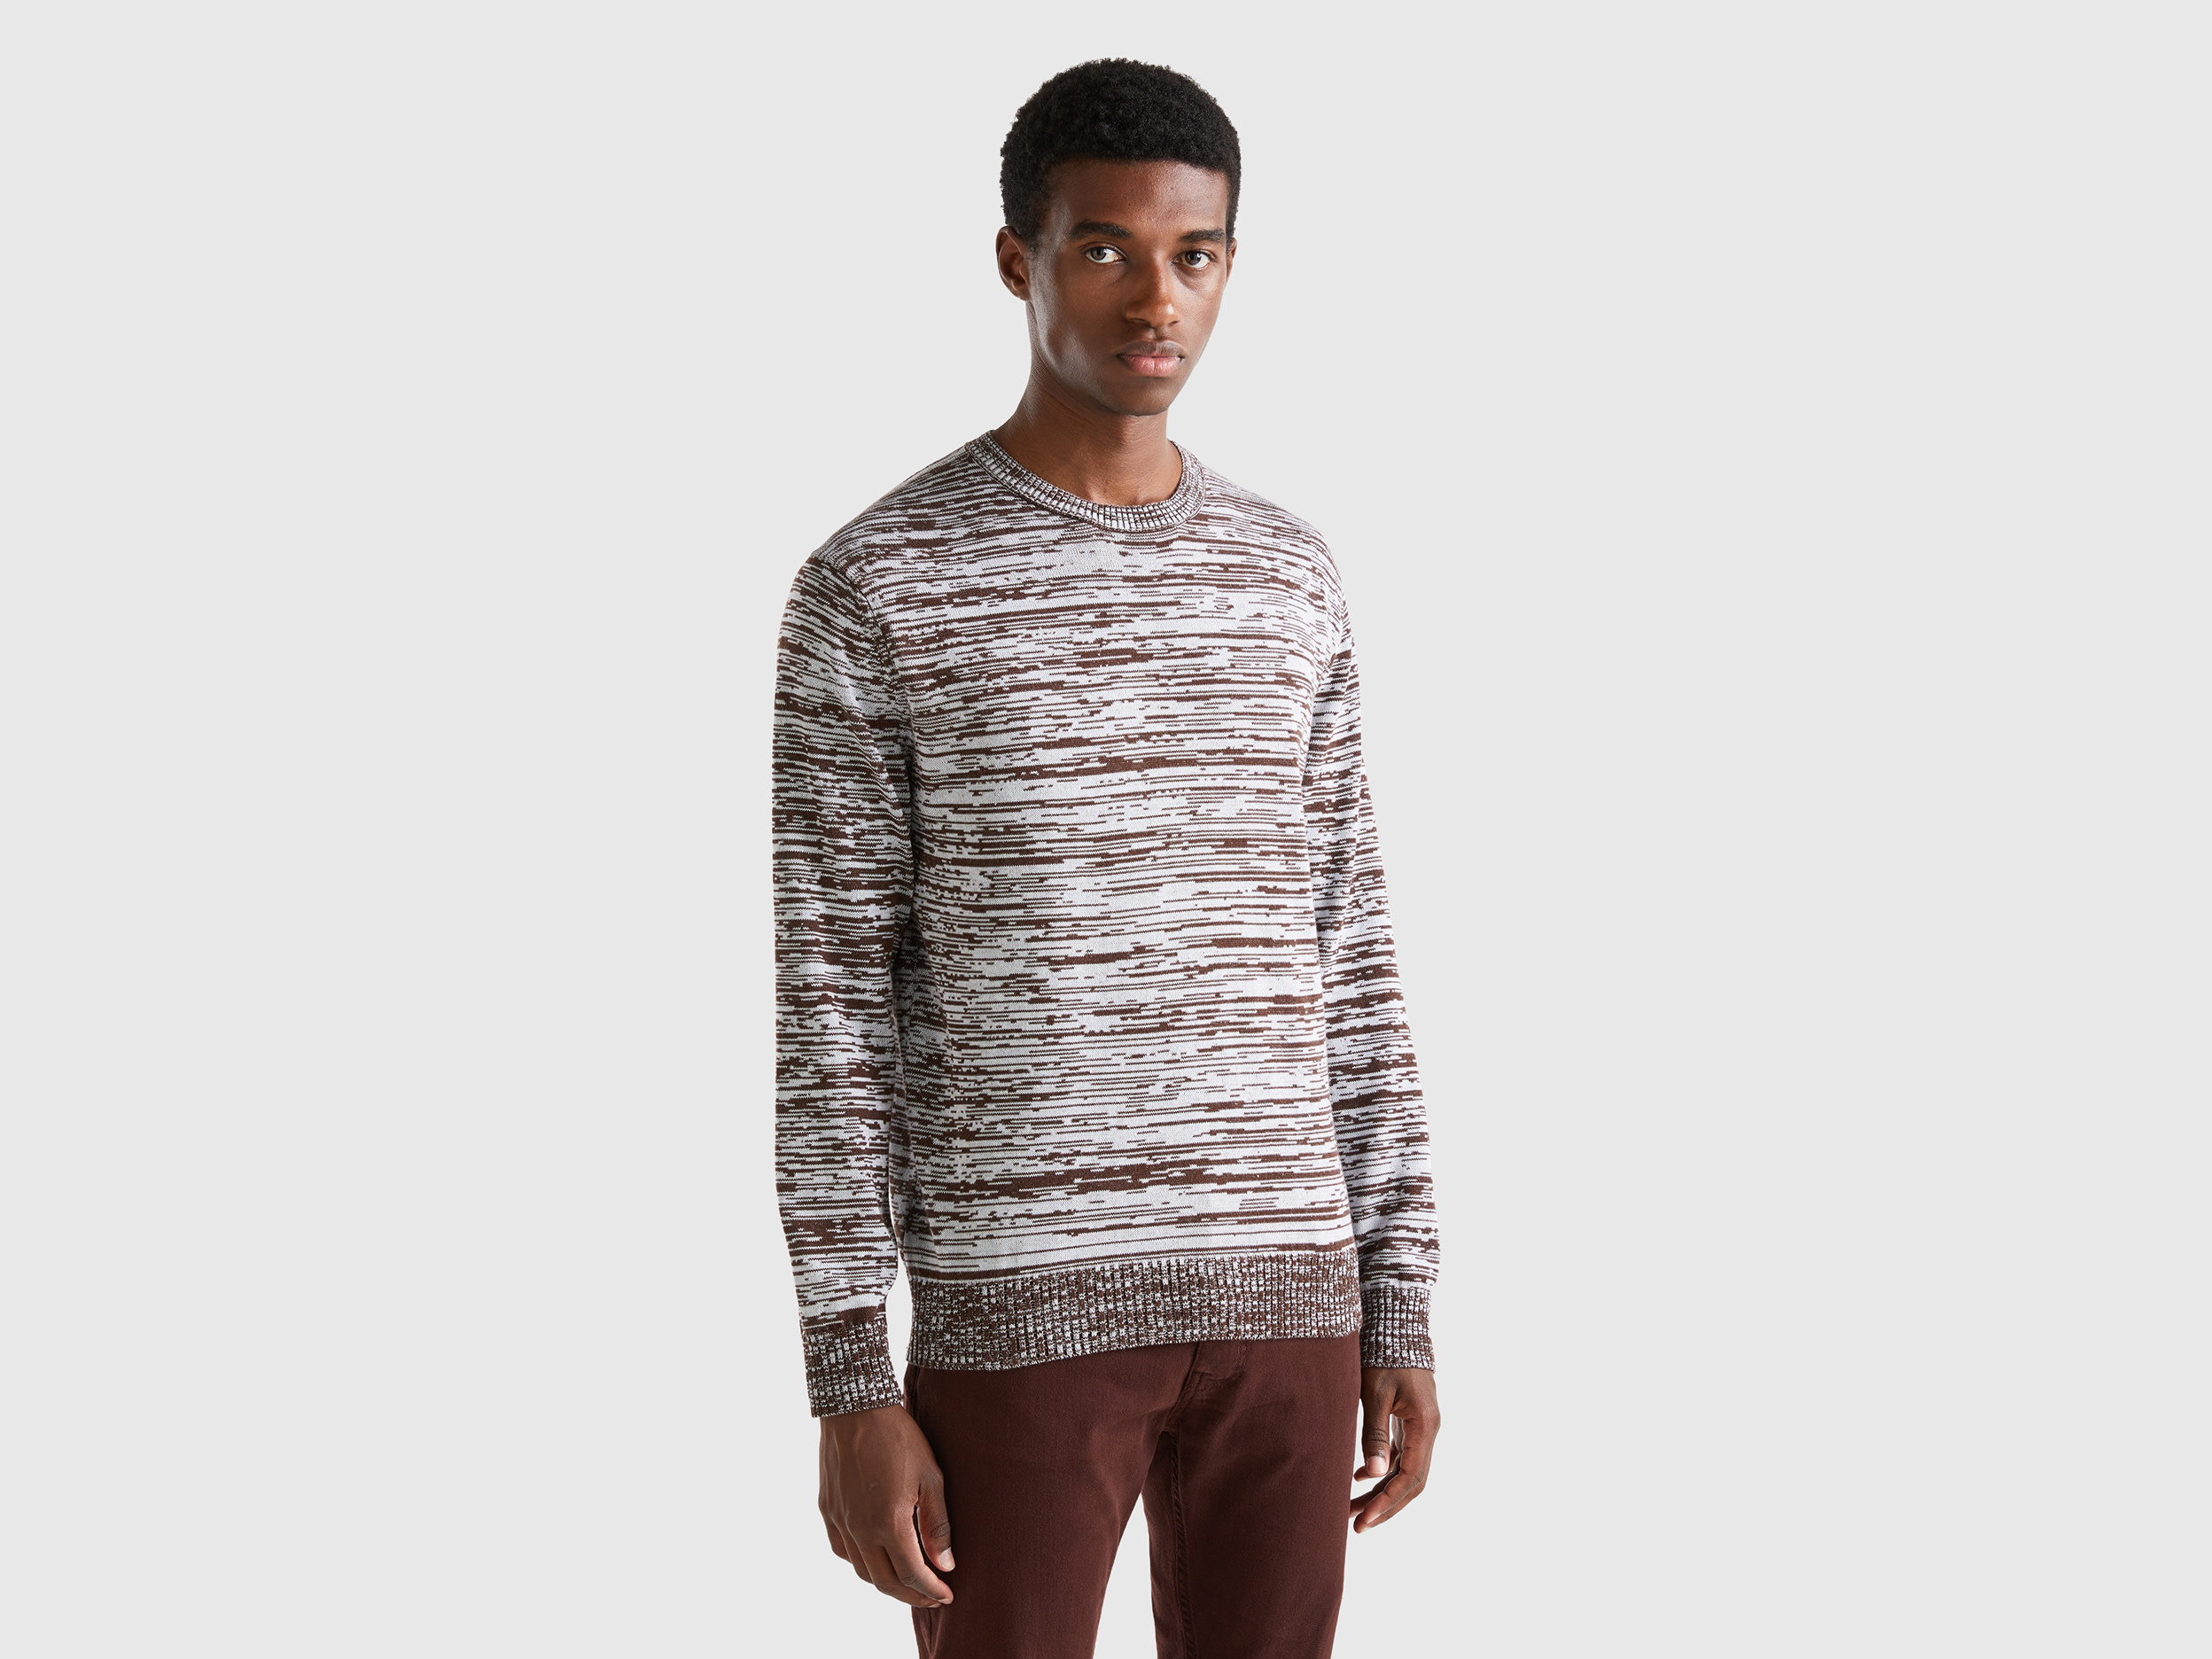 Benetton, Sweater With Striped Motif, size XXL, Dark Brown, Men